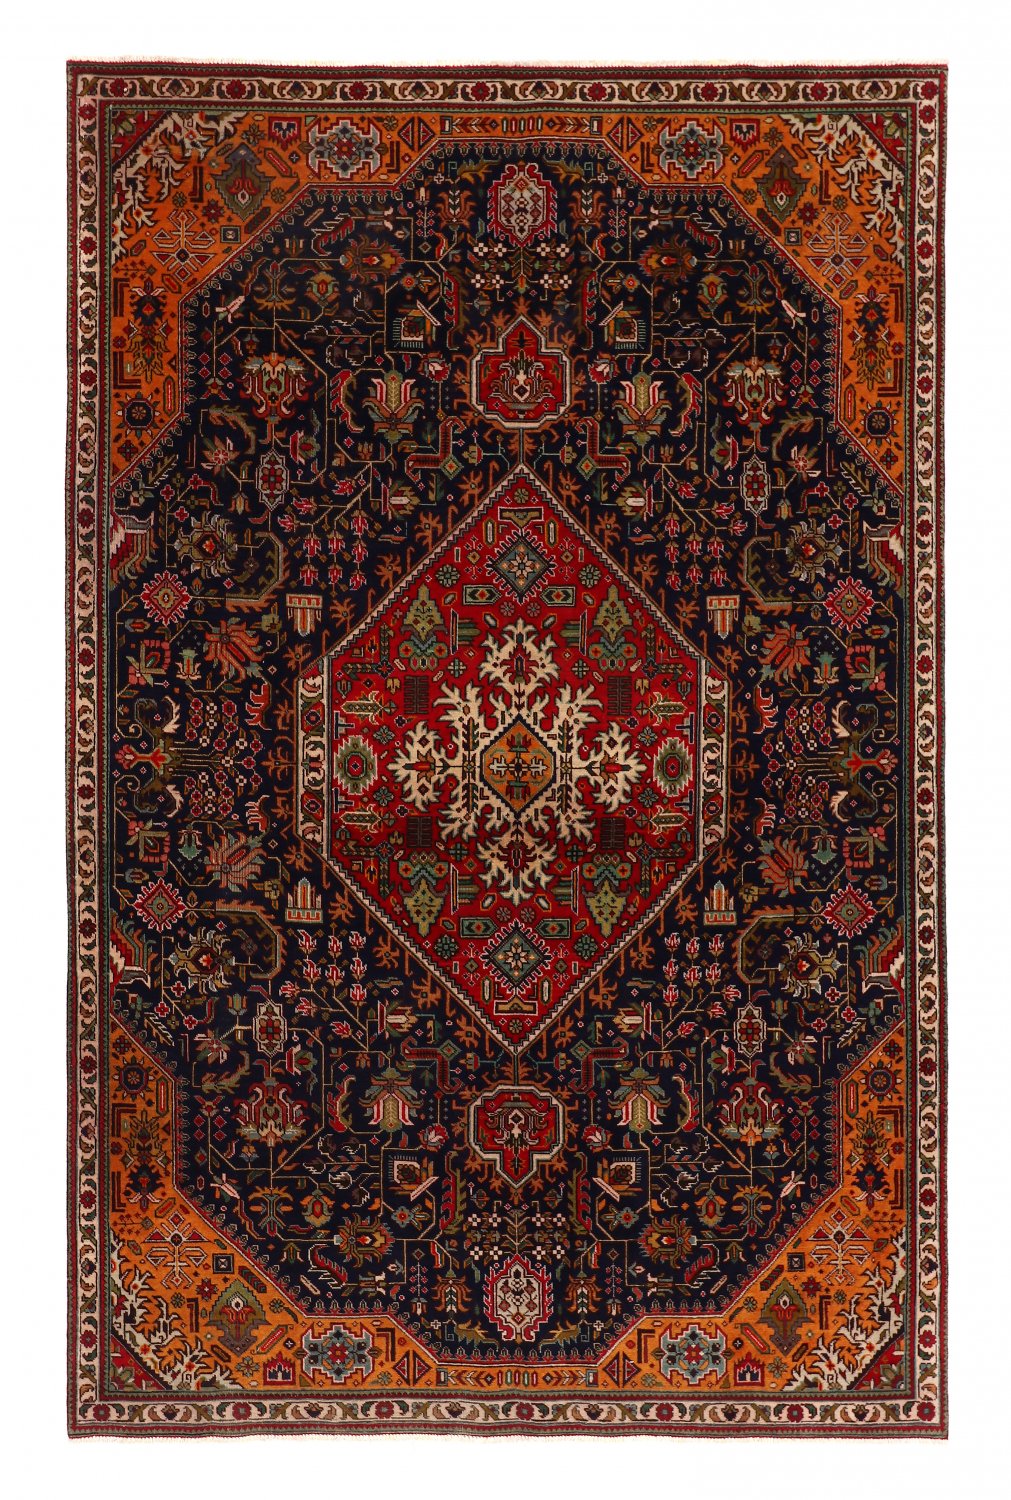 Persian rug Hamedan 298 x 191 cm